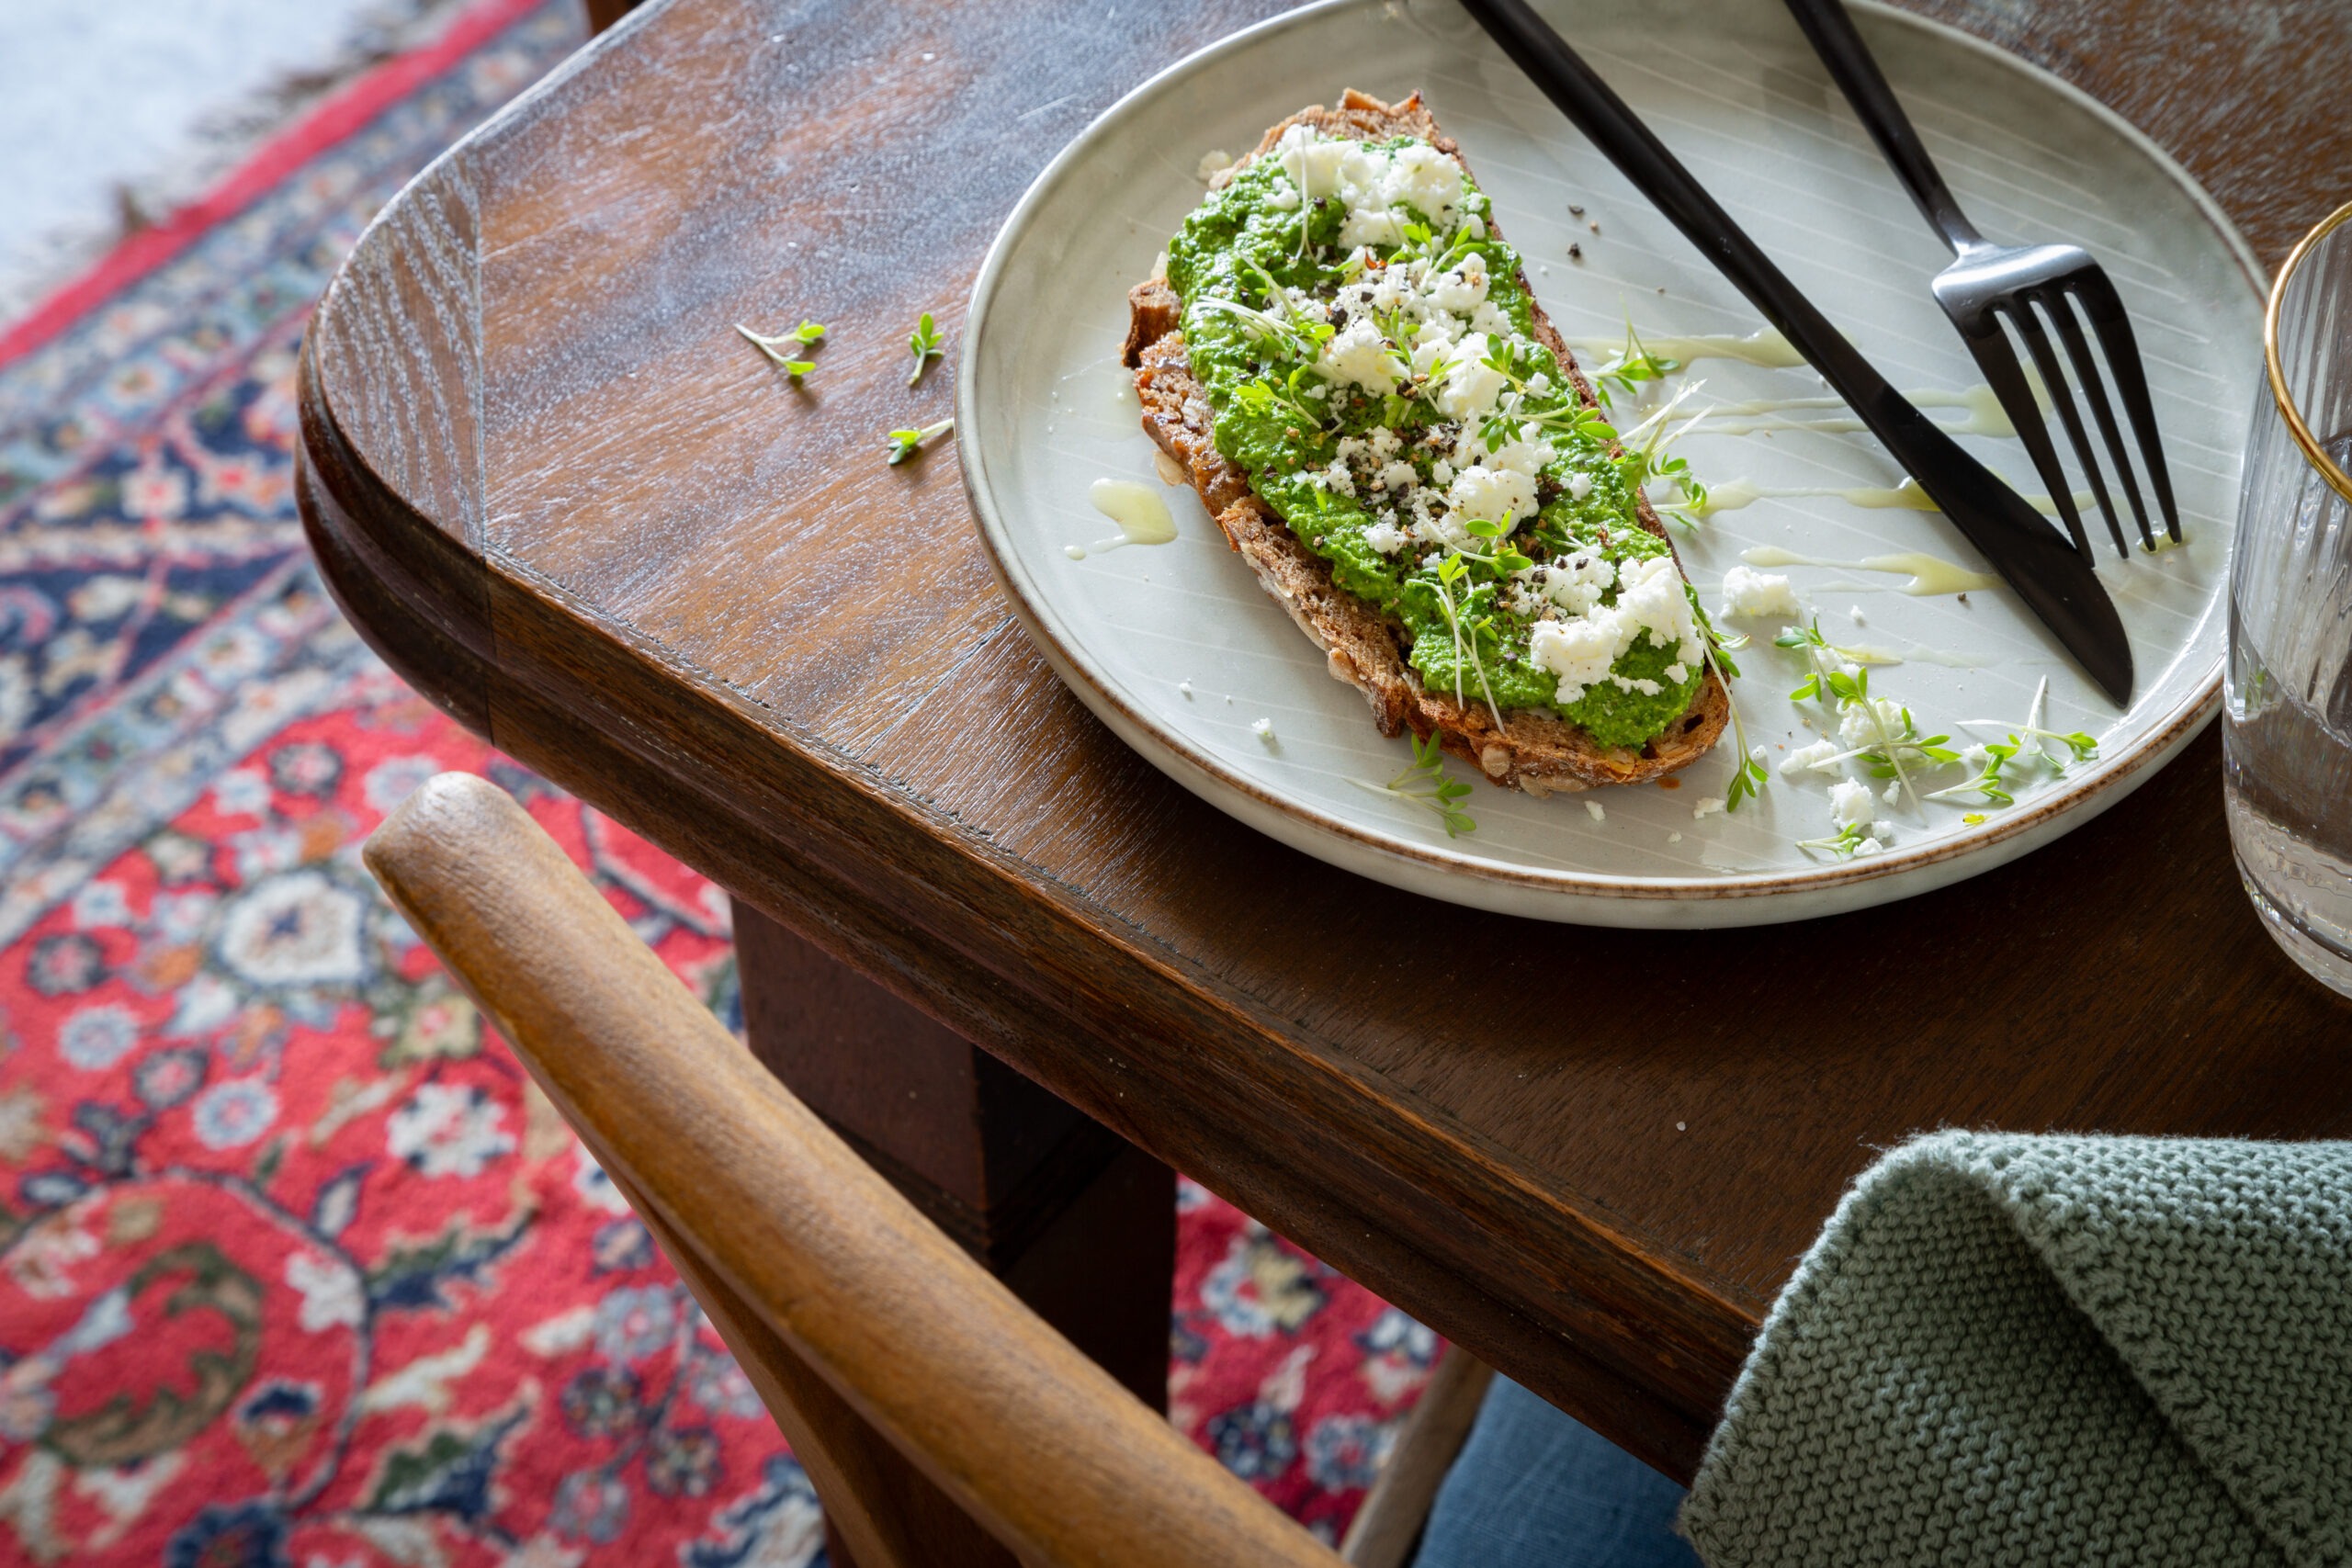 Tisch auf dem ein Teller steht mit Bärlauch-Pesto -Brot, getoppt mit Feta und Olivenöl.